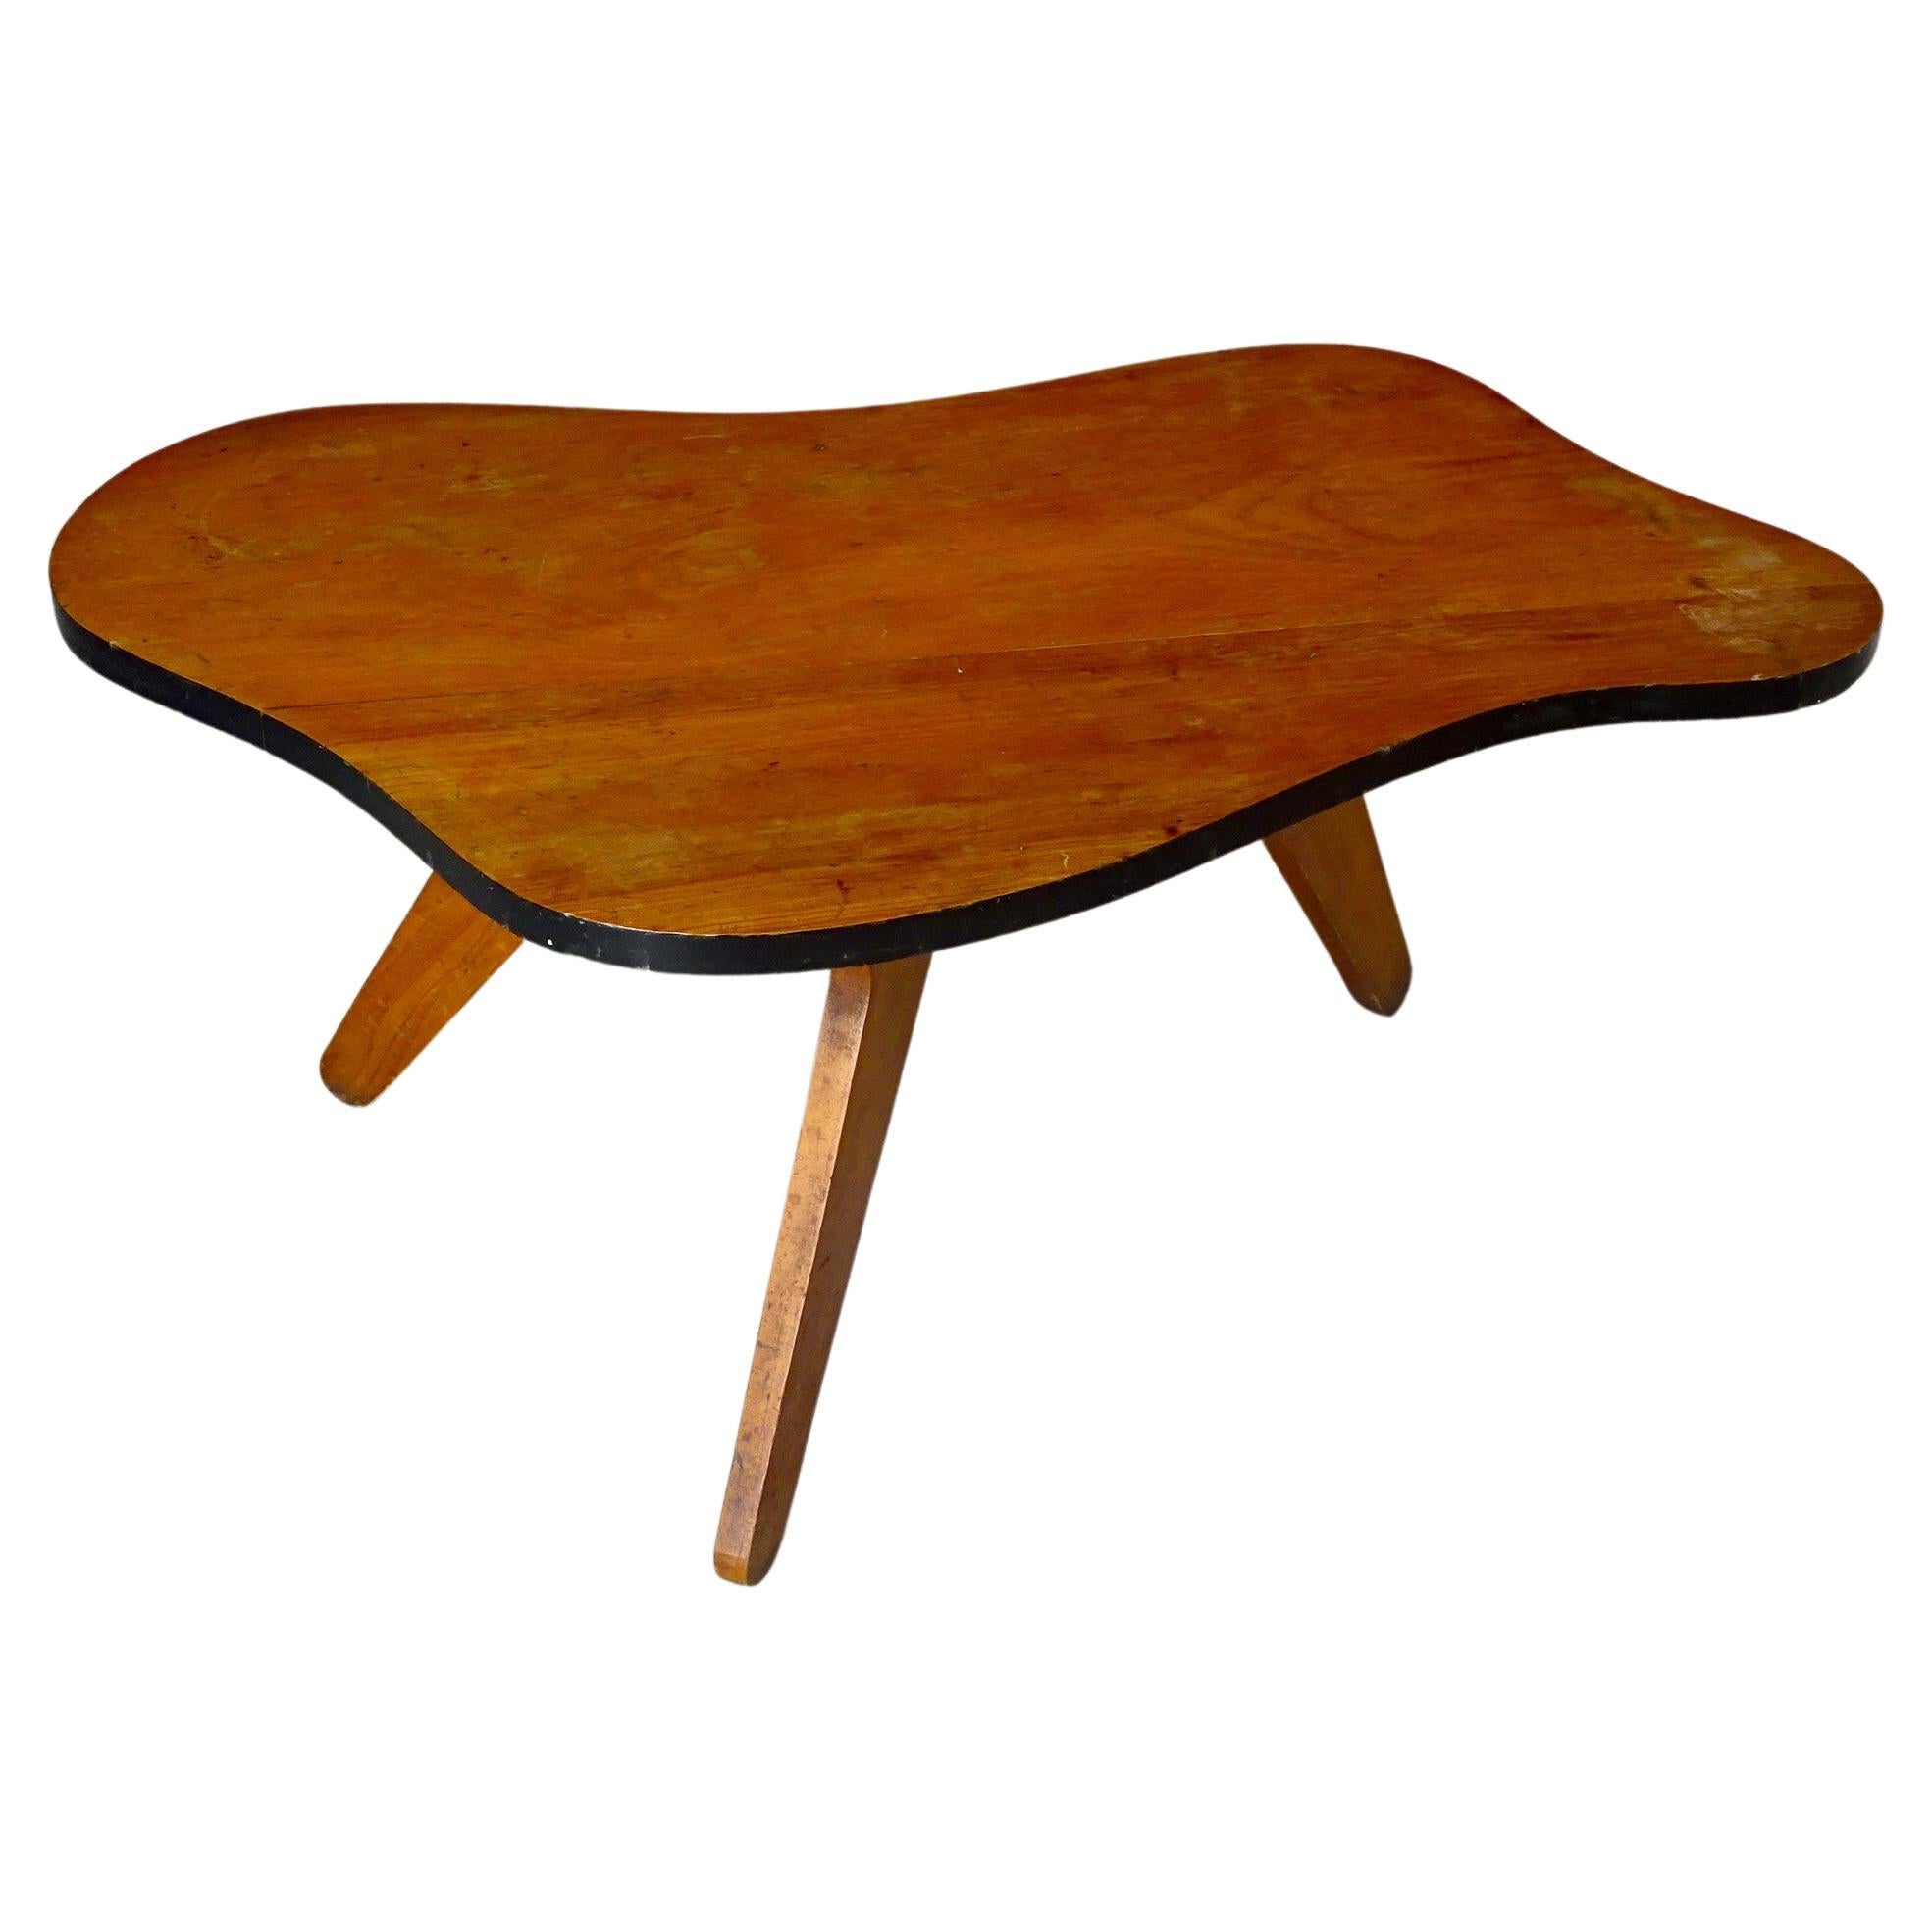 Table moderne du milieu du siècle dernier conçue par Zanine Caldas. Brésil, années 1950.